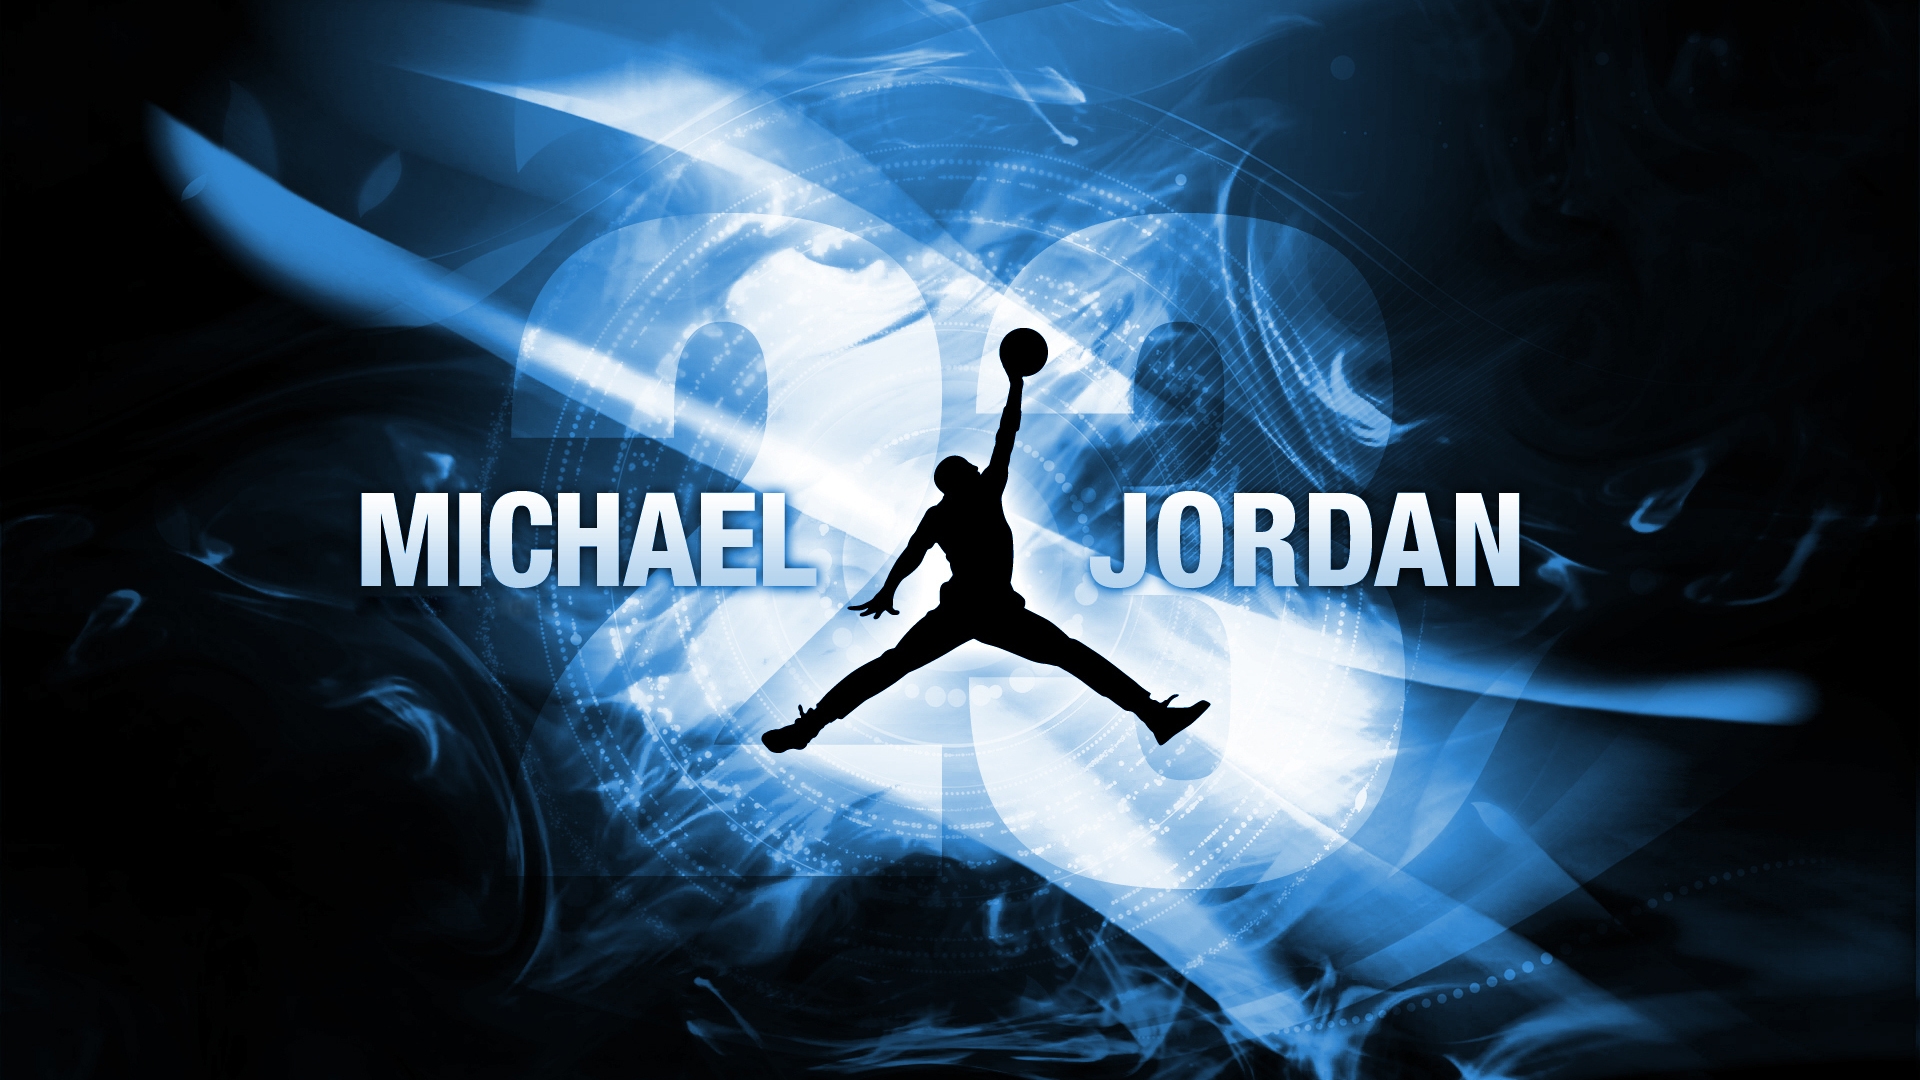 Michael Jordan for 1920 x 1080 HDTV 1080p resolution